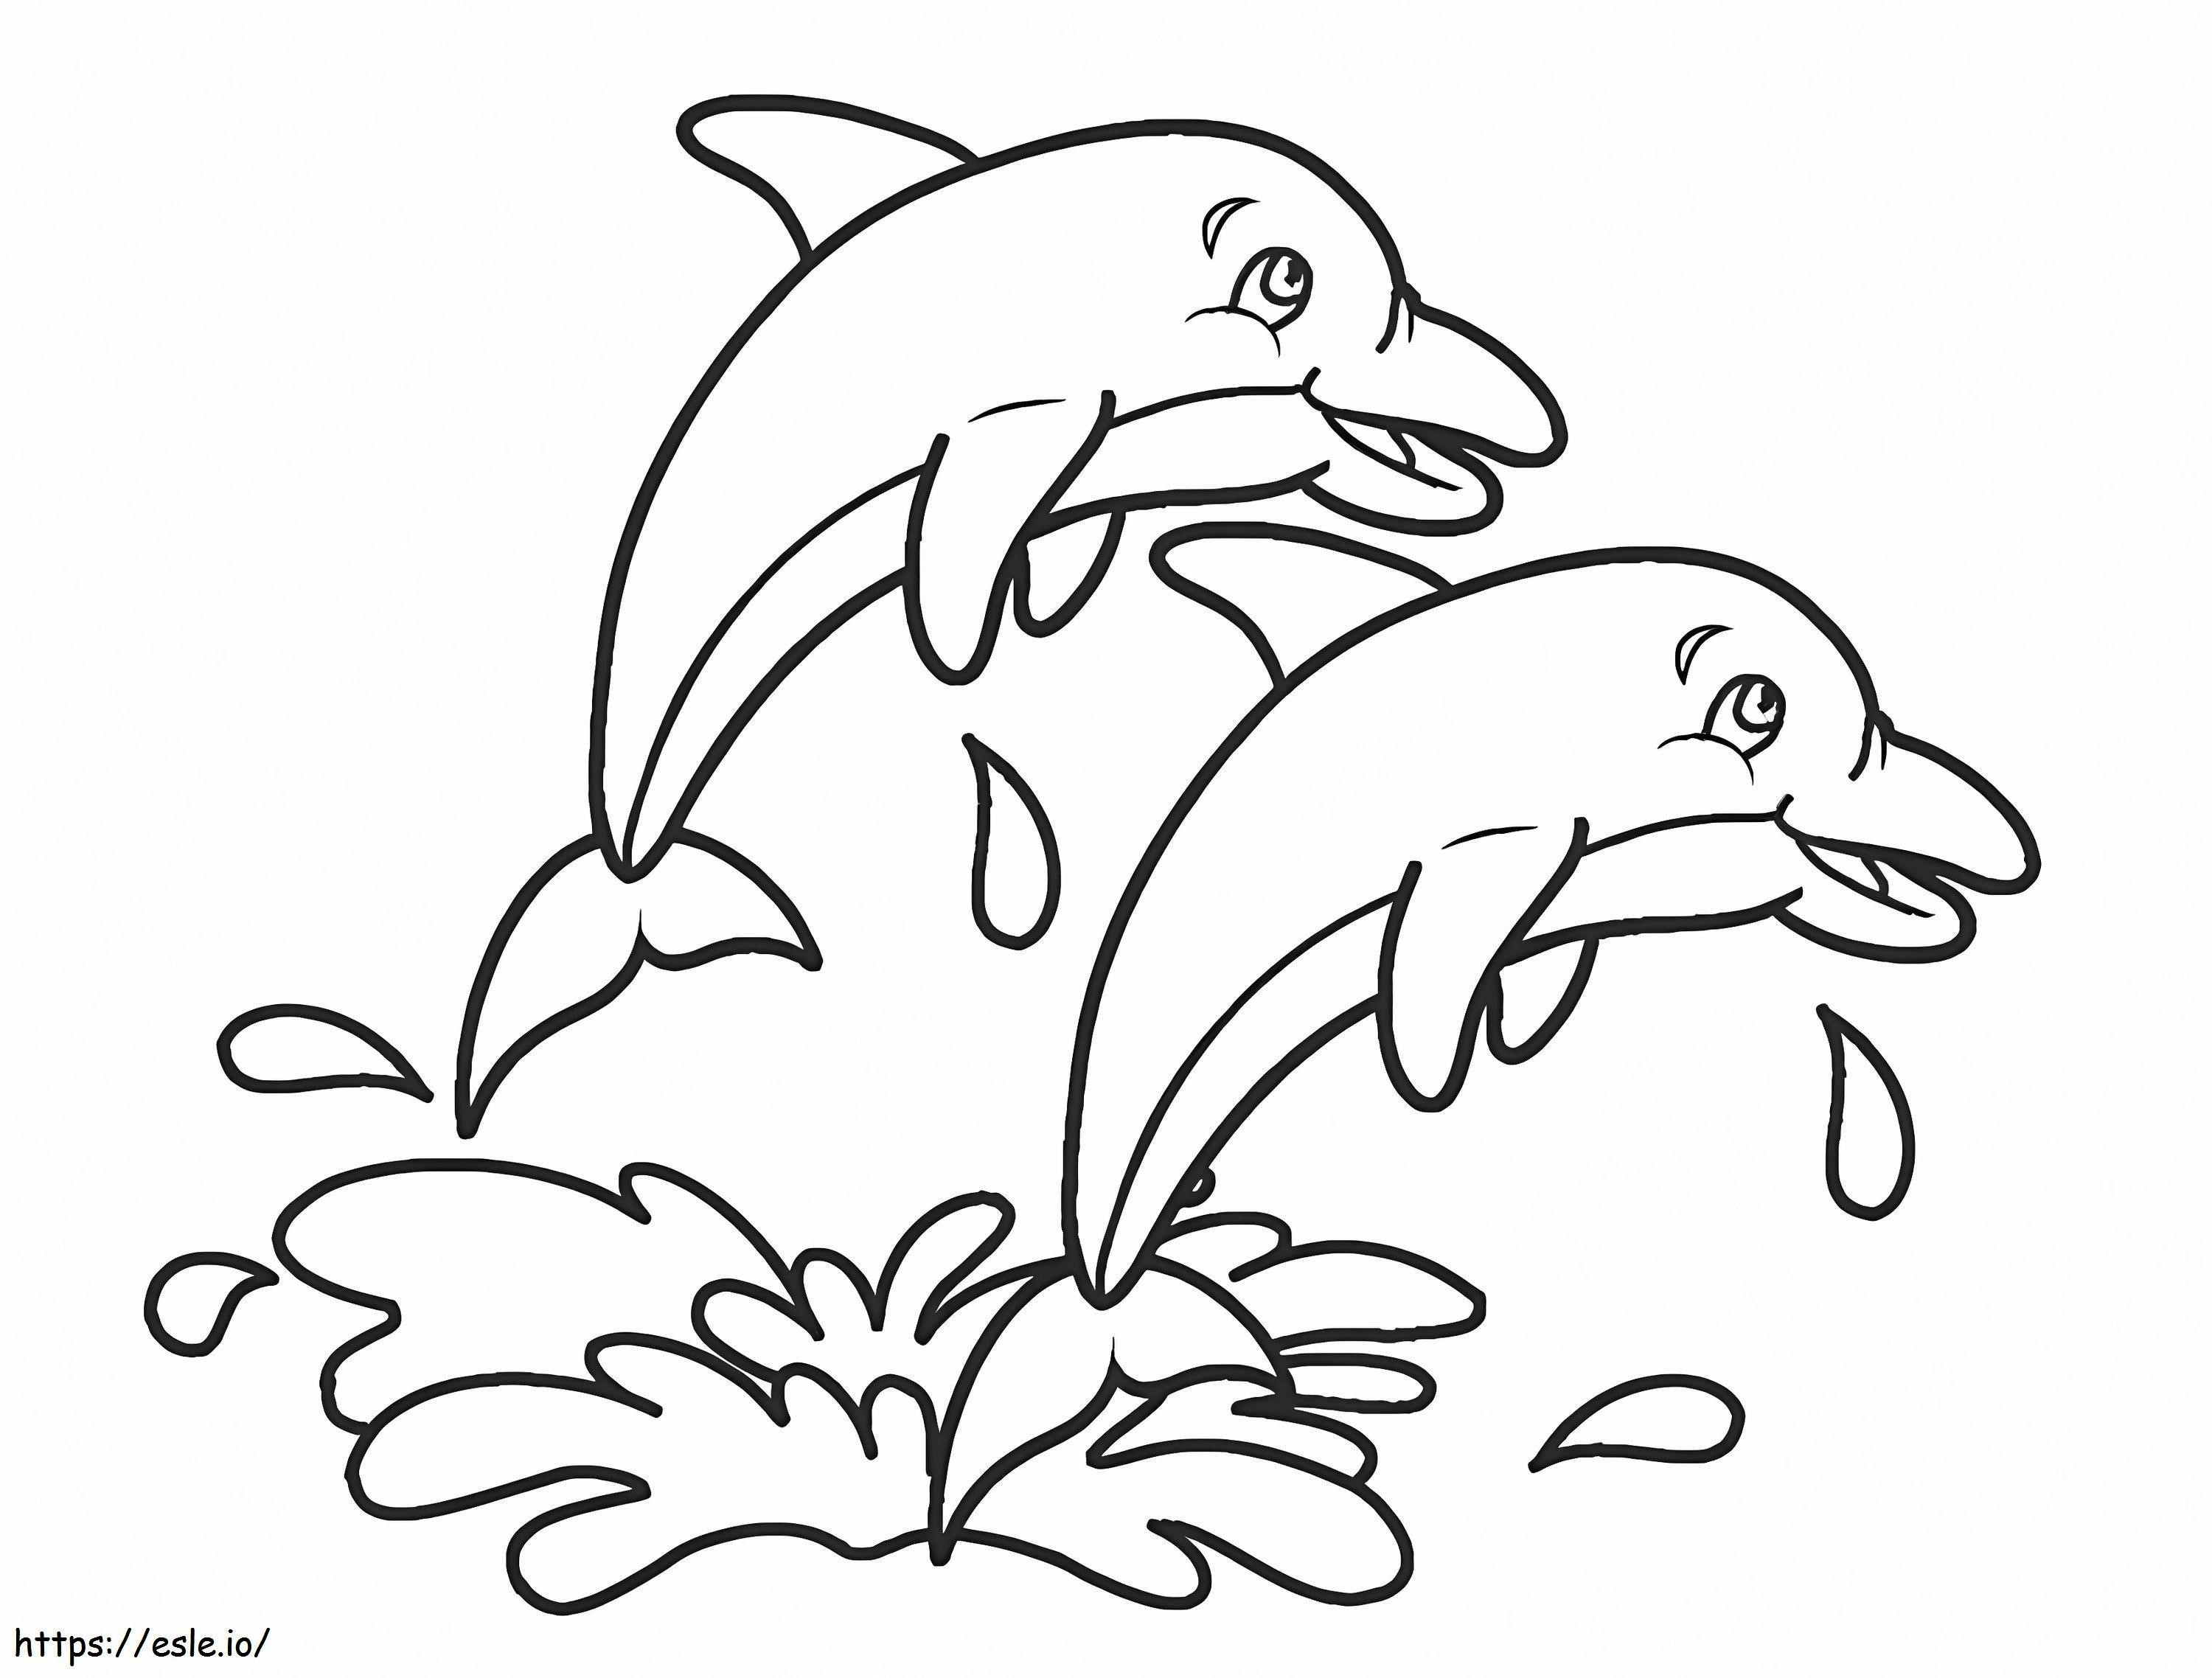 Casal de golfinhos para colorir